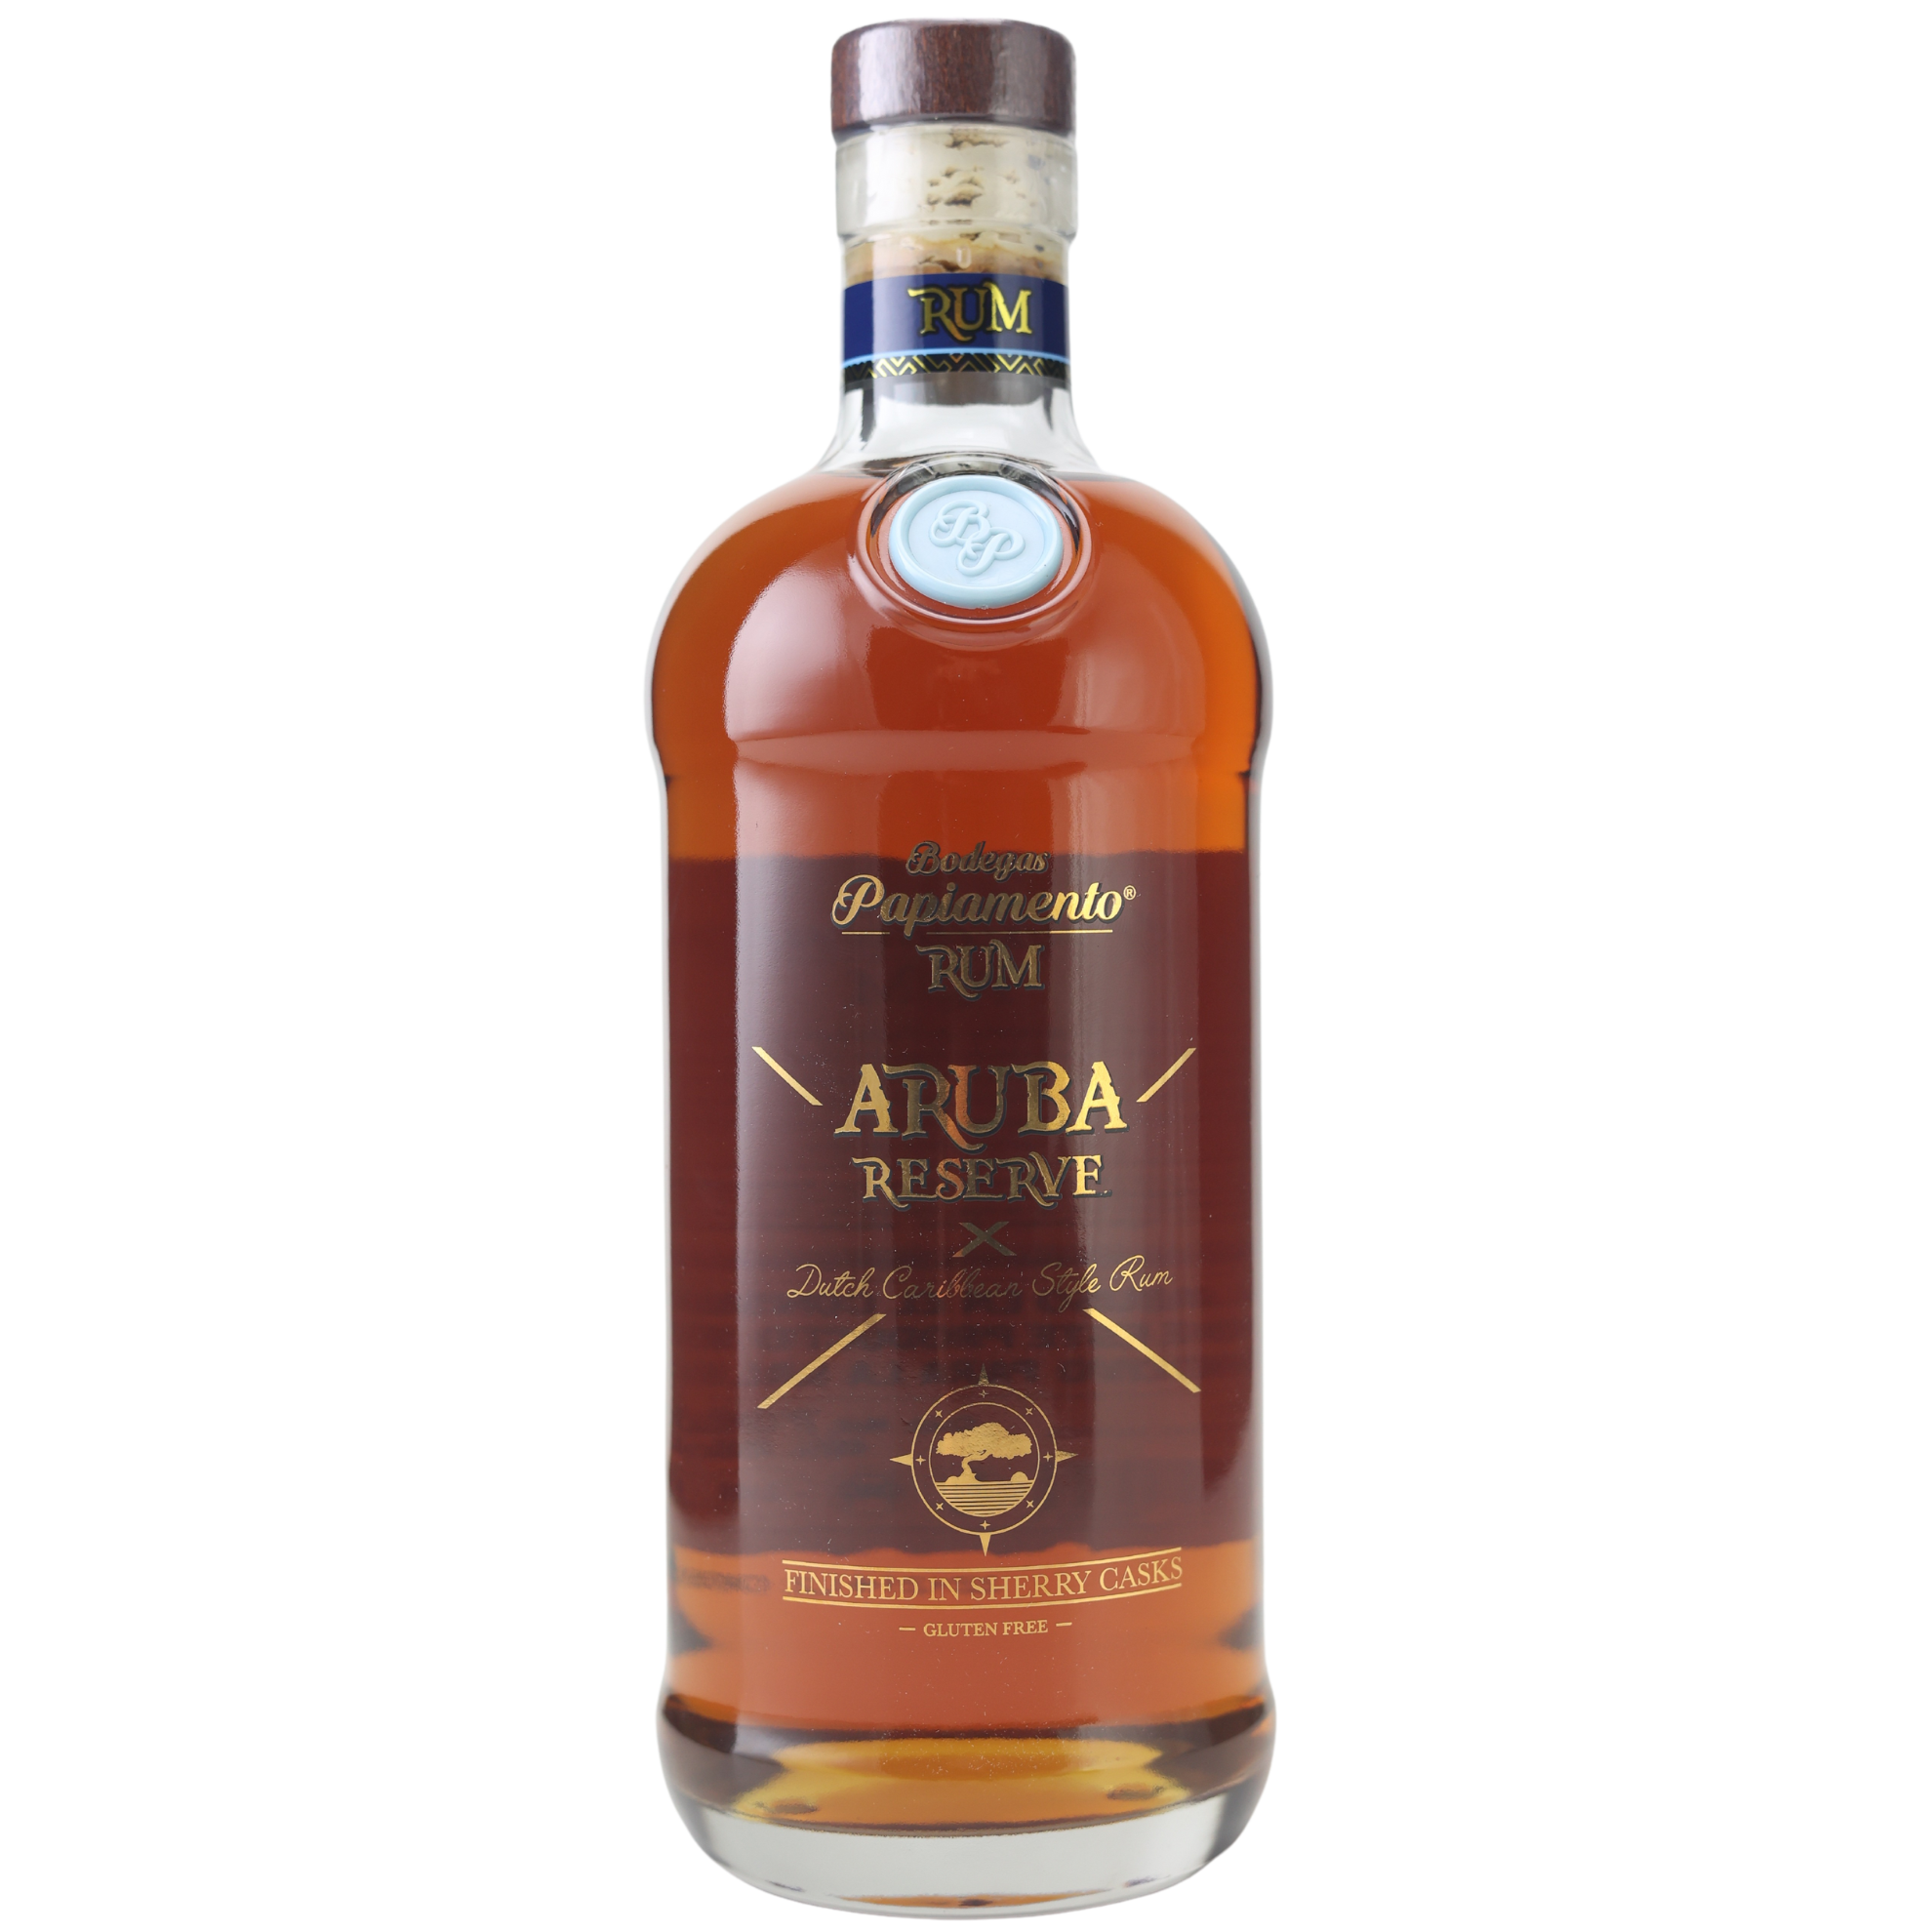 Bodega Papiamento Aruba Reserve Rum 40% 0,7l